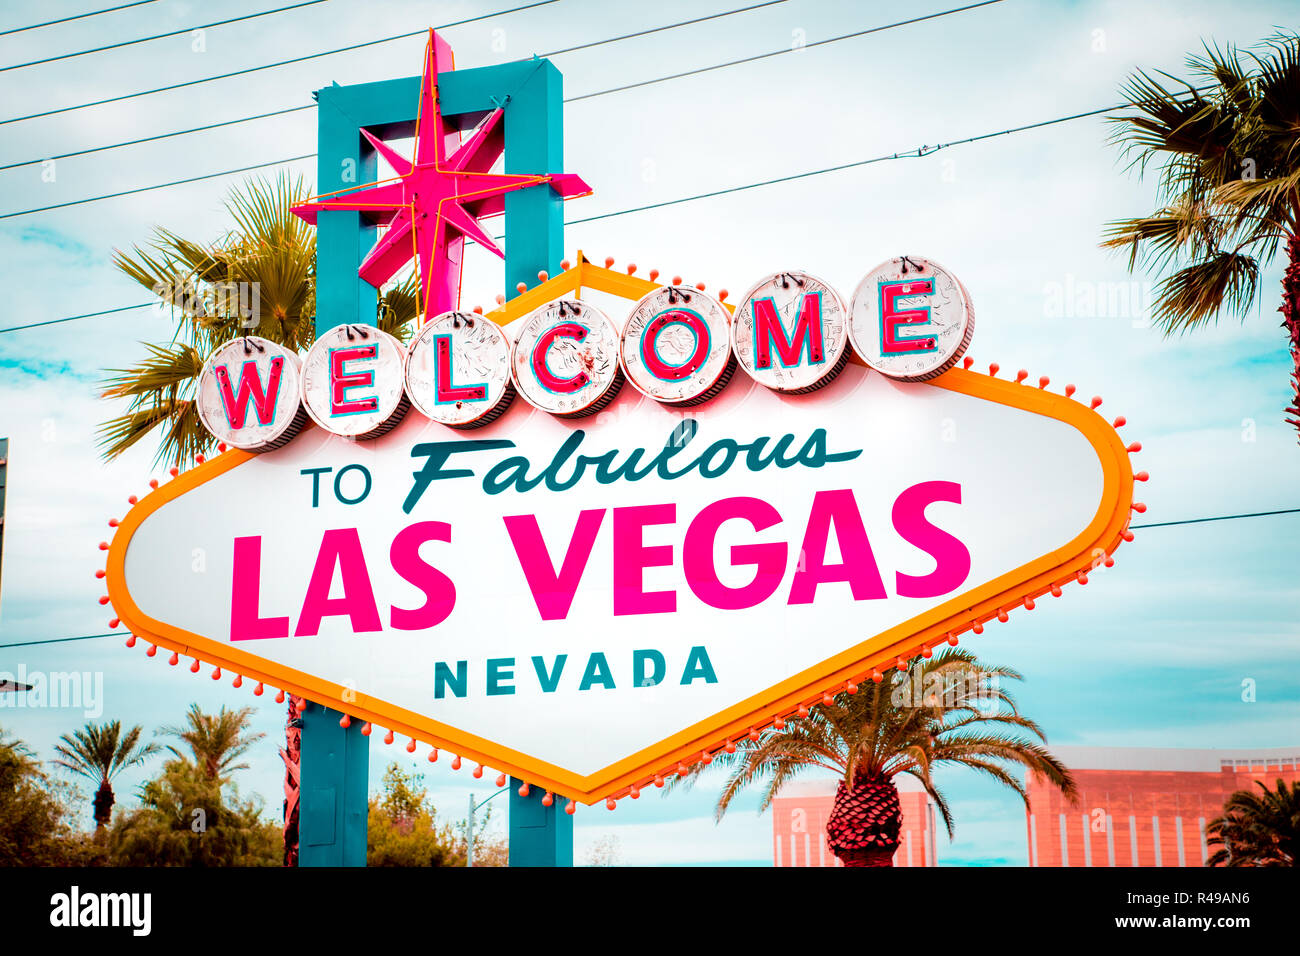 Klassische Ansicht von Welcome to Fabulous Las Vegas Schild am südlichen Ende des berühmten Las Vegas Strip Welt an einem schönen sonnigen Tag mit blauem Himmel und Wolken Stockfoto